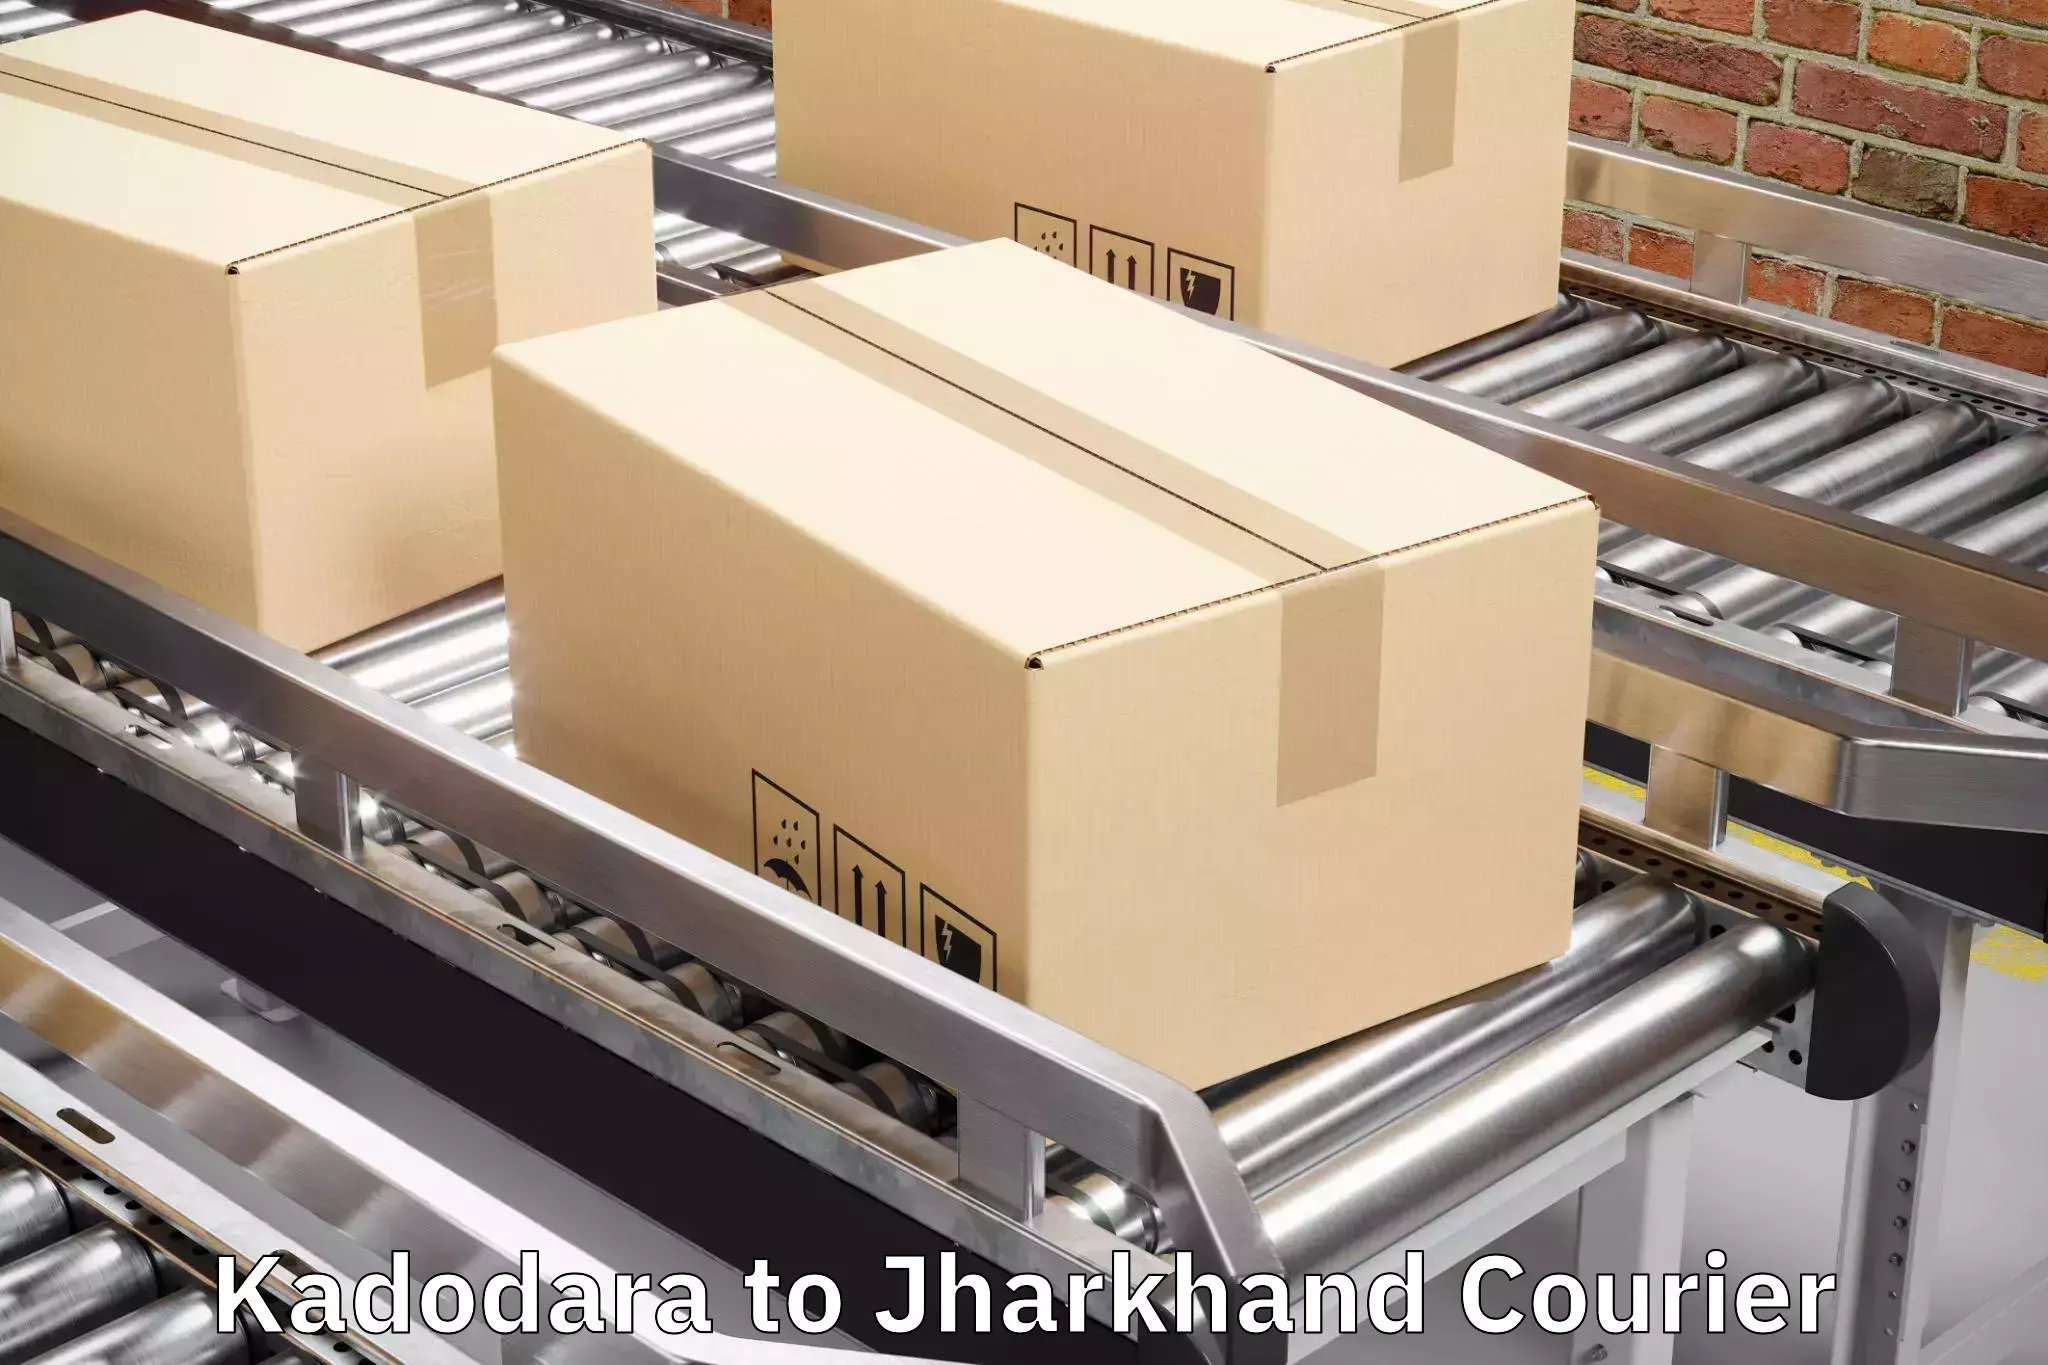 Luggage delivery estimate Kadodara to IIIT Ranchi